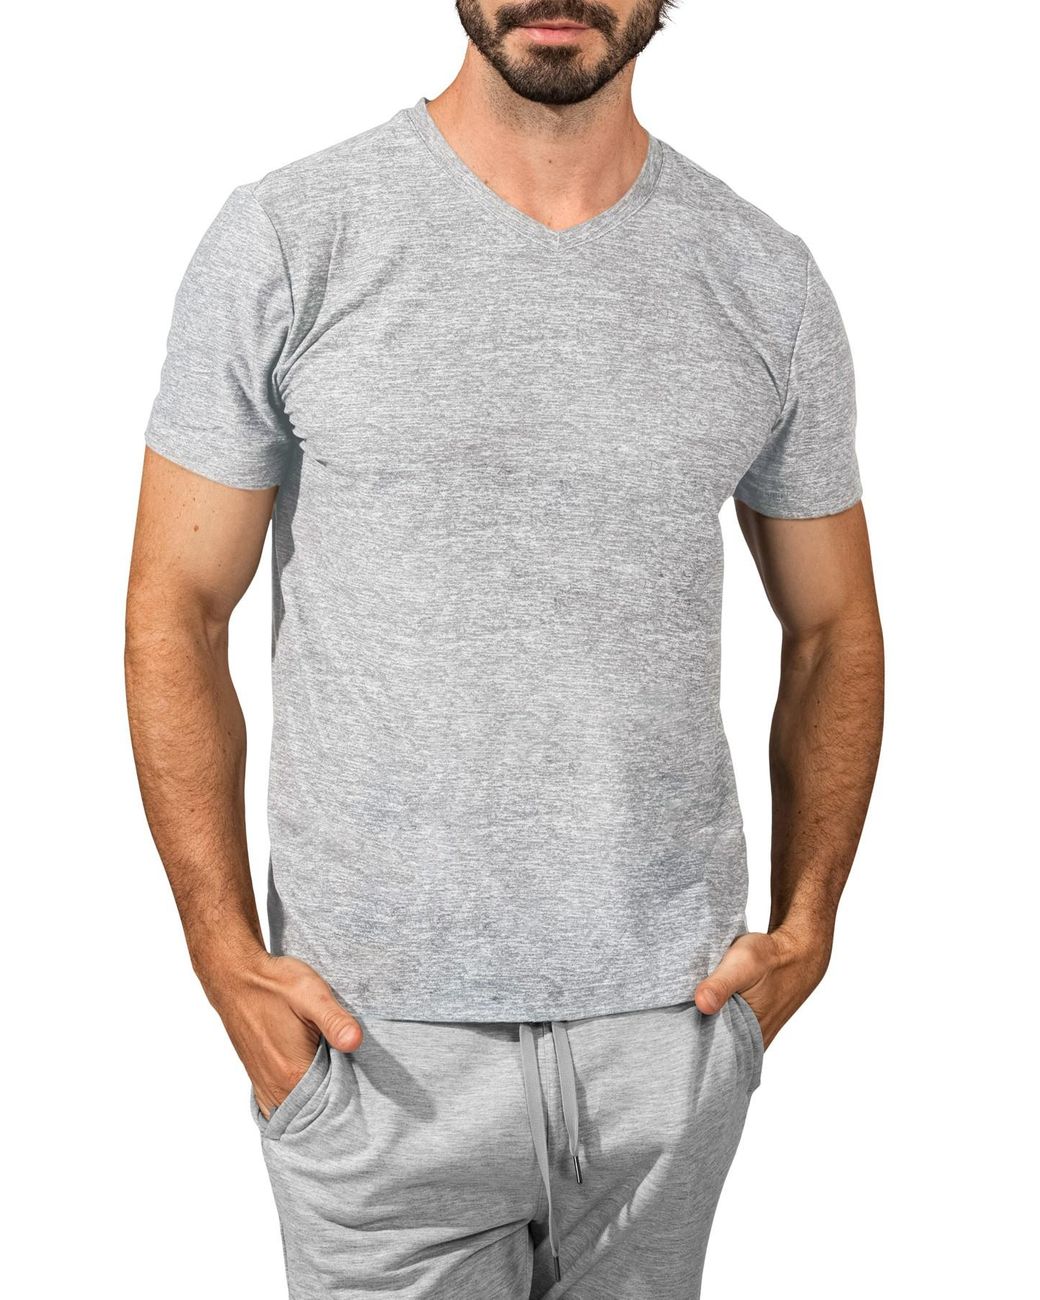 90 Degrees Cotton V-neck Short Sleeve T-shirt in Gray for Men - Lyst